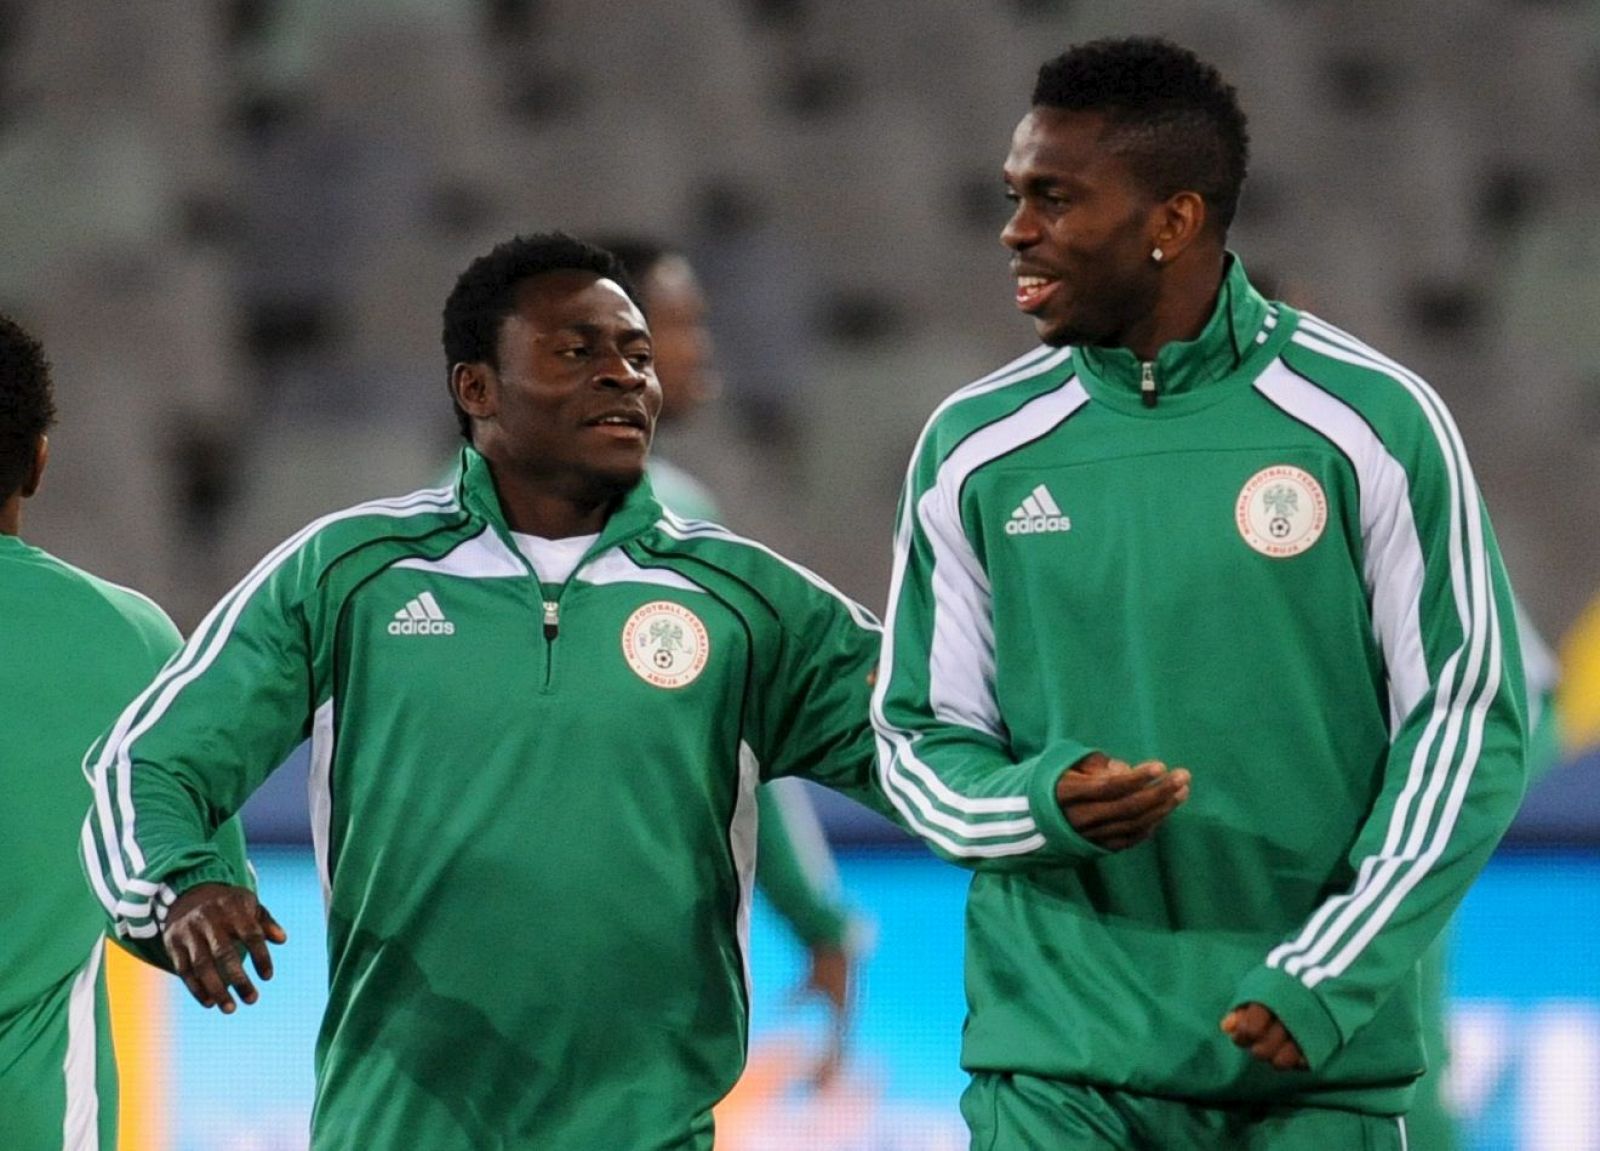 Los jugadores de la selección nigeriana Obafemi Martins y Dele Adeleye conversan durante el entrenamiento.